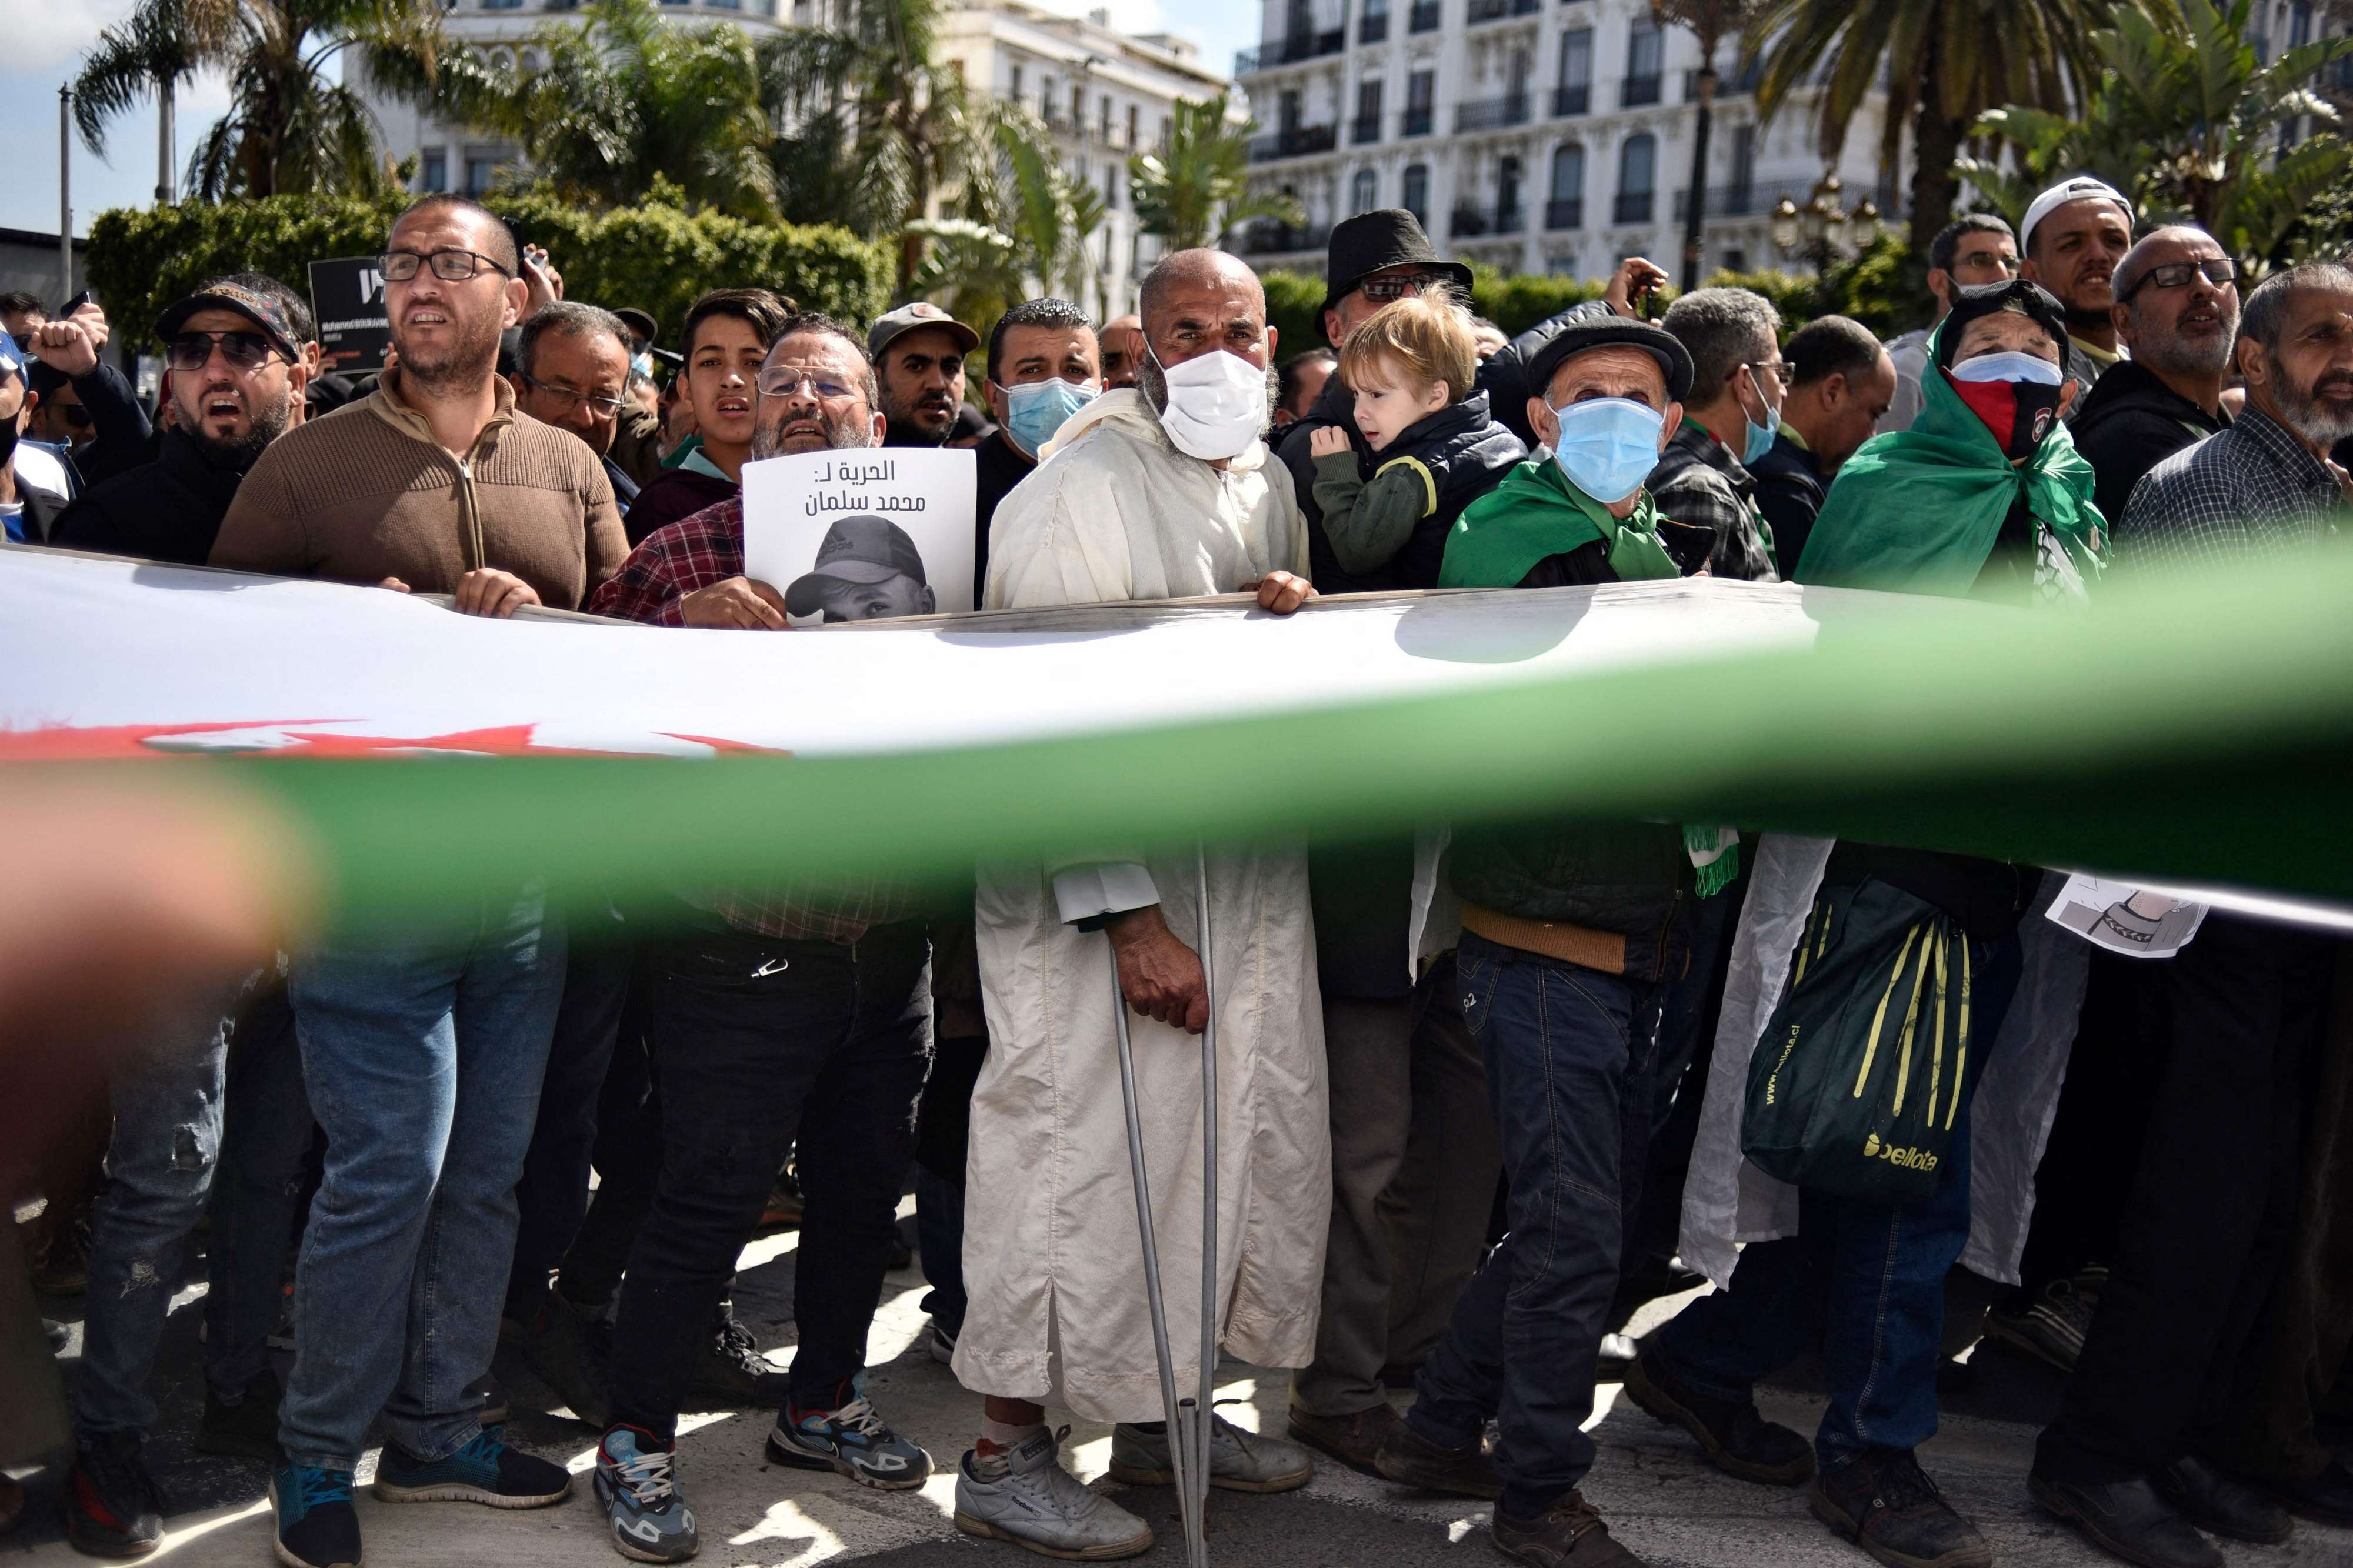 زخم الحراك الجزائري يعود بقوة رغم قمع السلطة